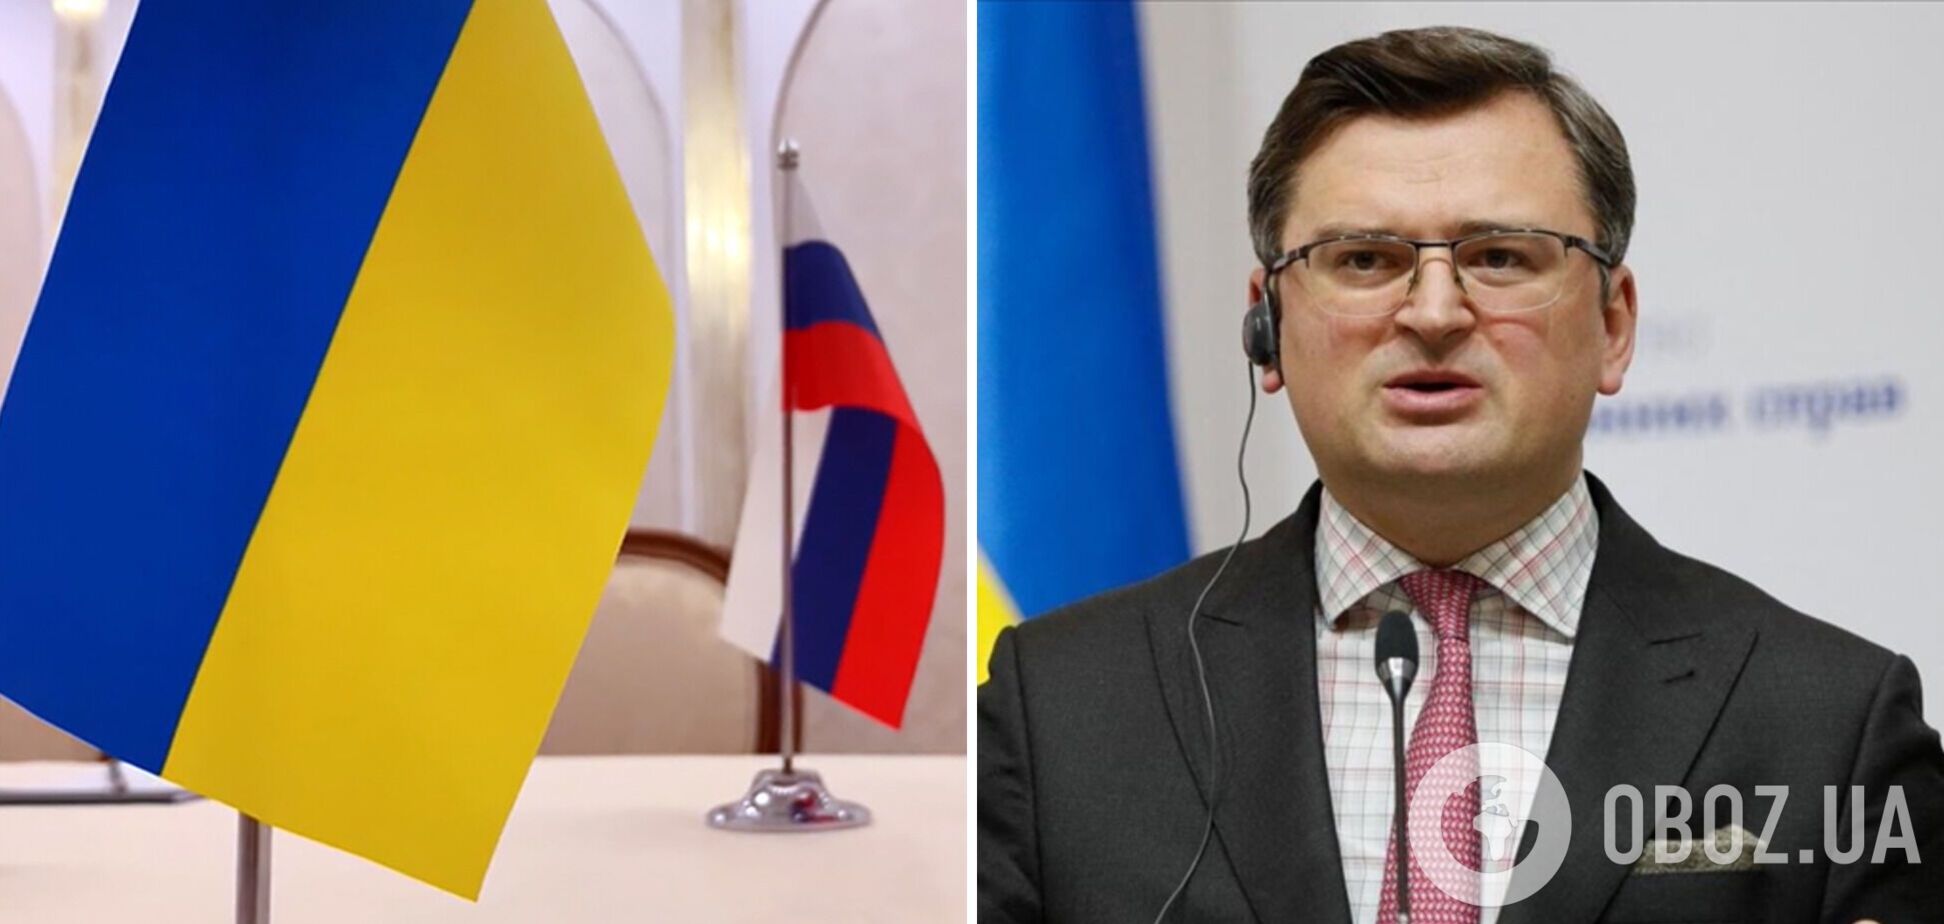 Угрозы Украине продолжаются: посольства в Дании и Румынии получили подозрительные свертки